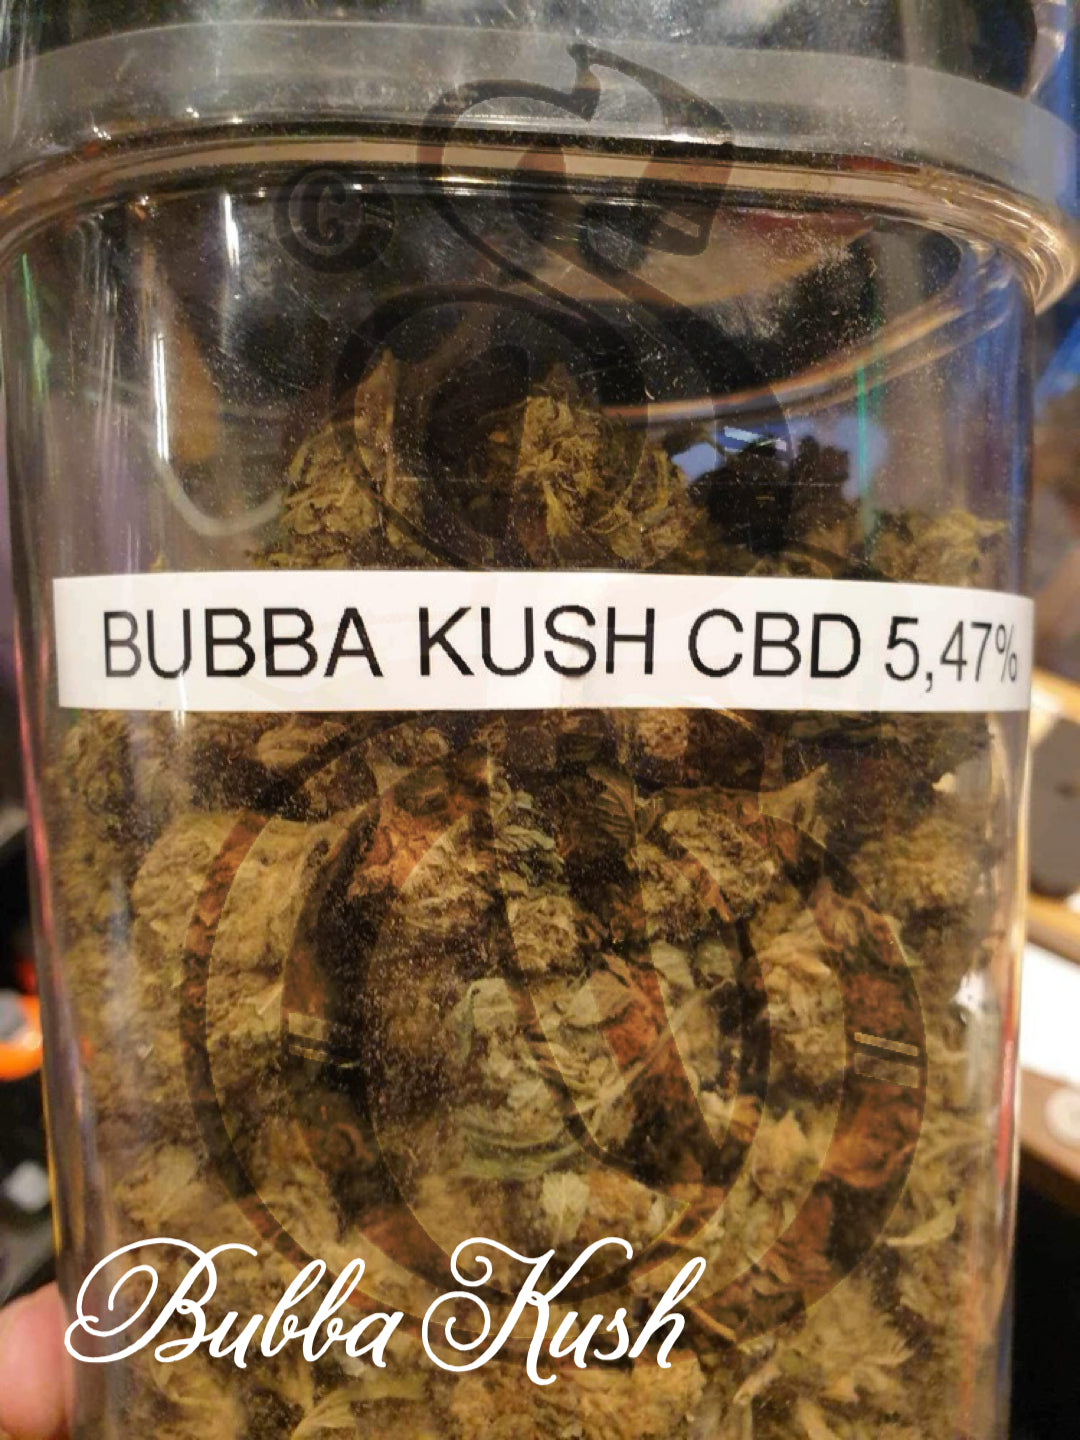 Bubba kush cbd, 4,47%